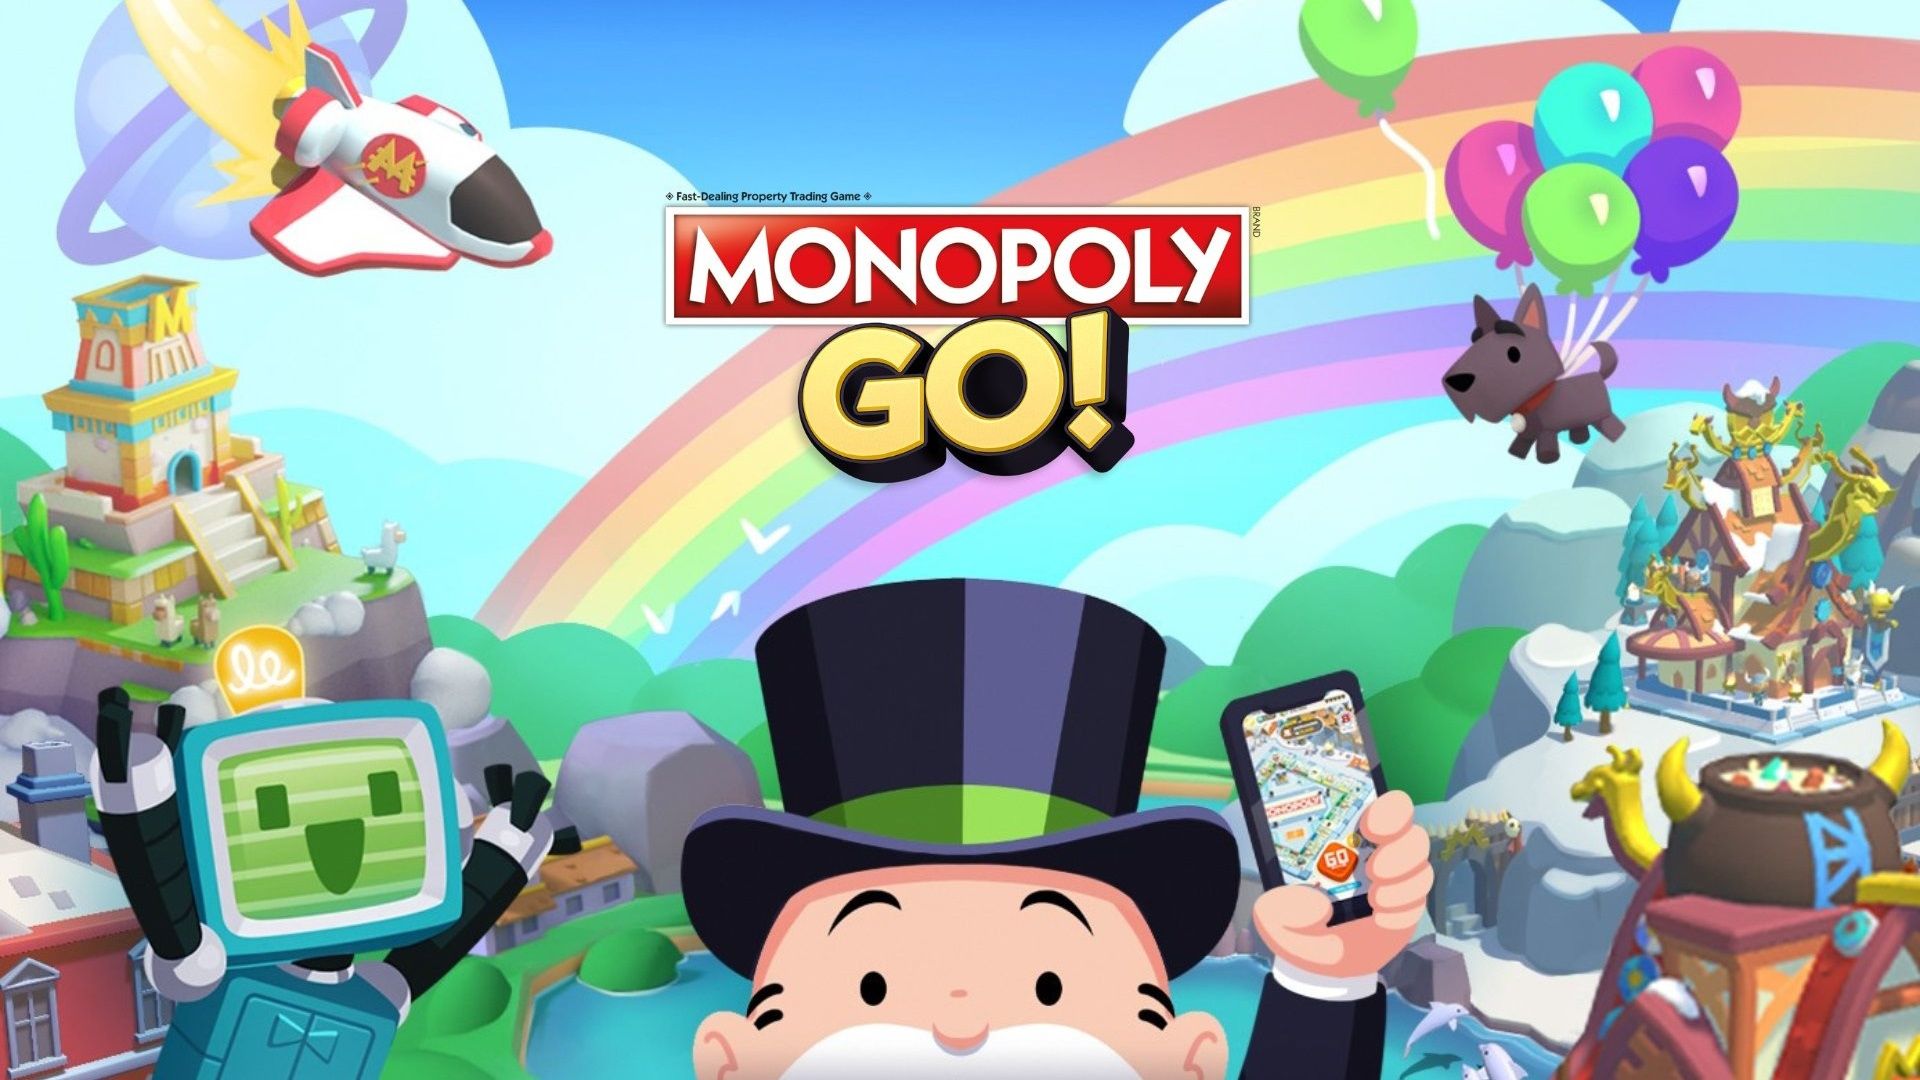 Pôster do Monopoly Go mostrando figuras de desenhos animados com o Sr. Monopoly segurando um telefone no centro em um fundo colorido